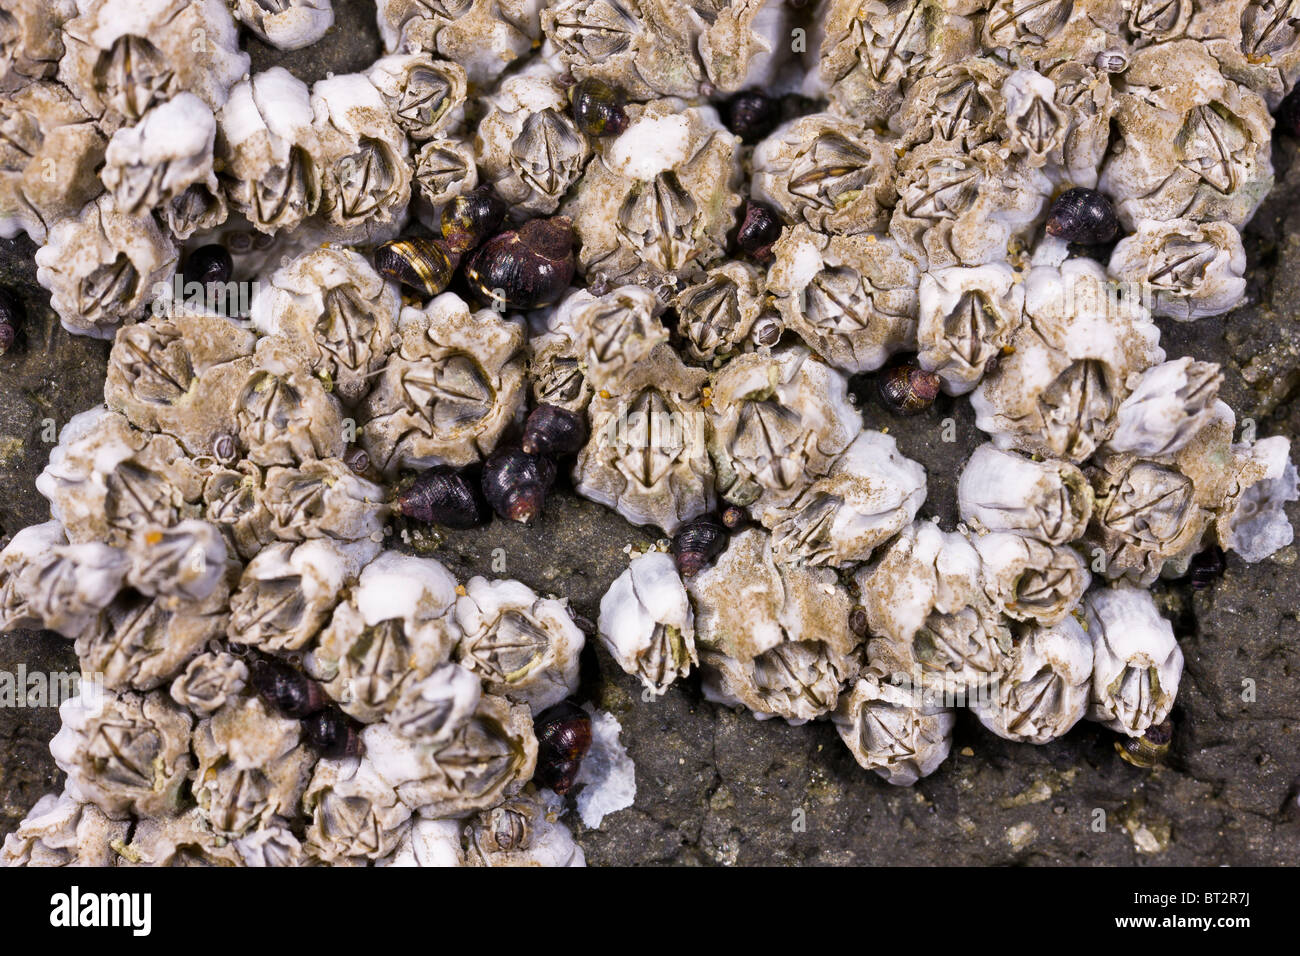 CAPE PERPETUA SCENIC AREA, OREGON, Stati Uniti d'America - cirripedi sulla roccia alla spiaggia. Foto Stock